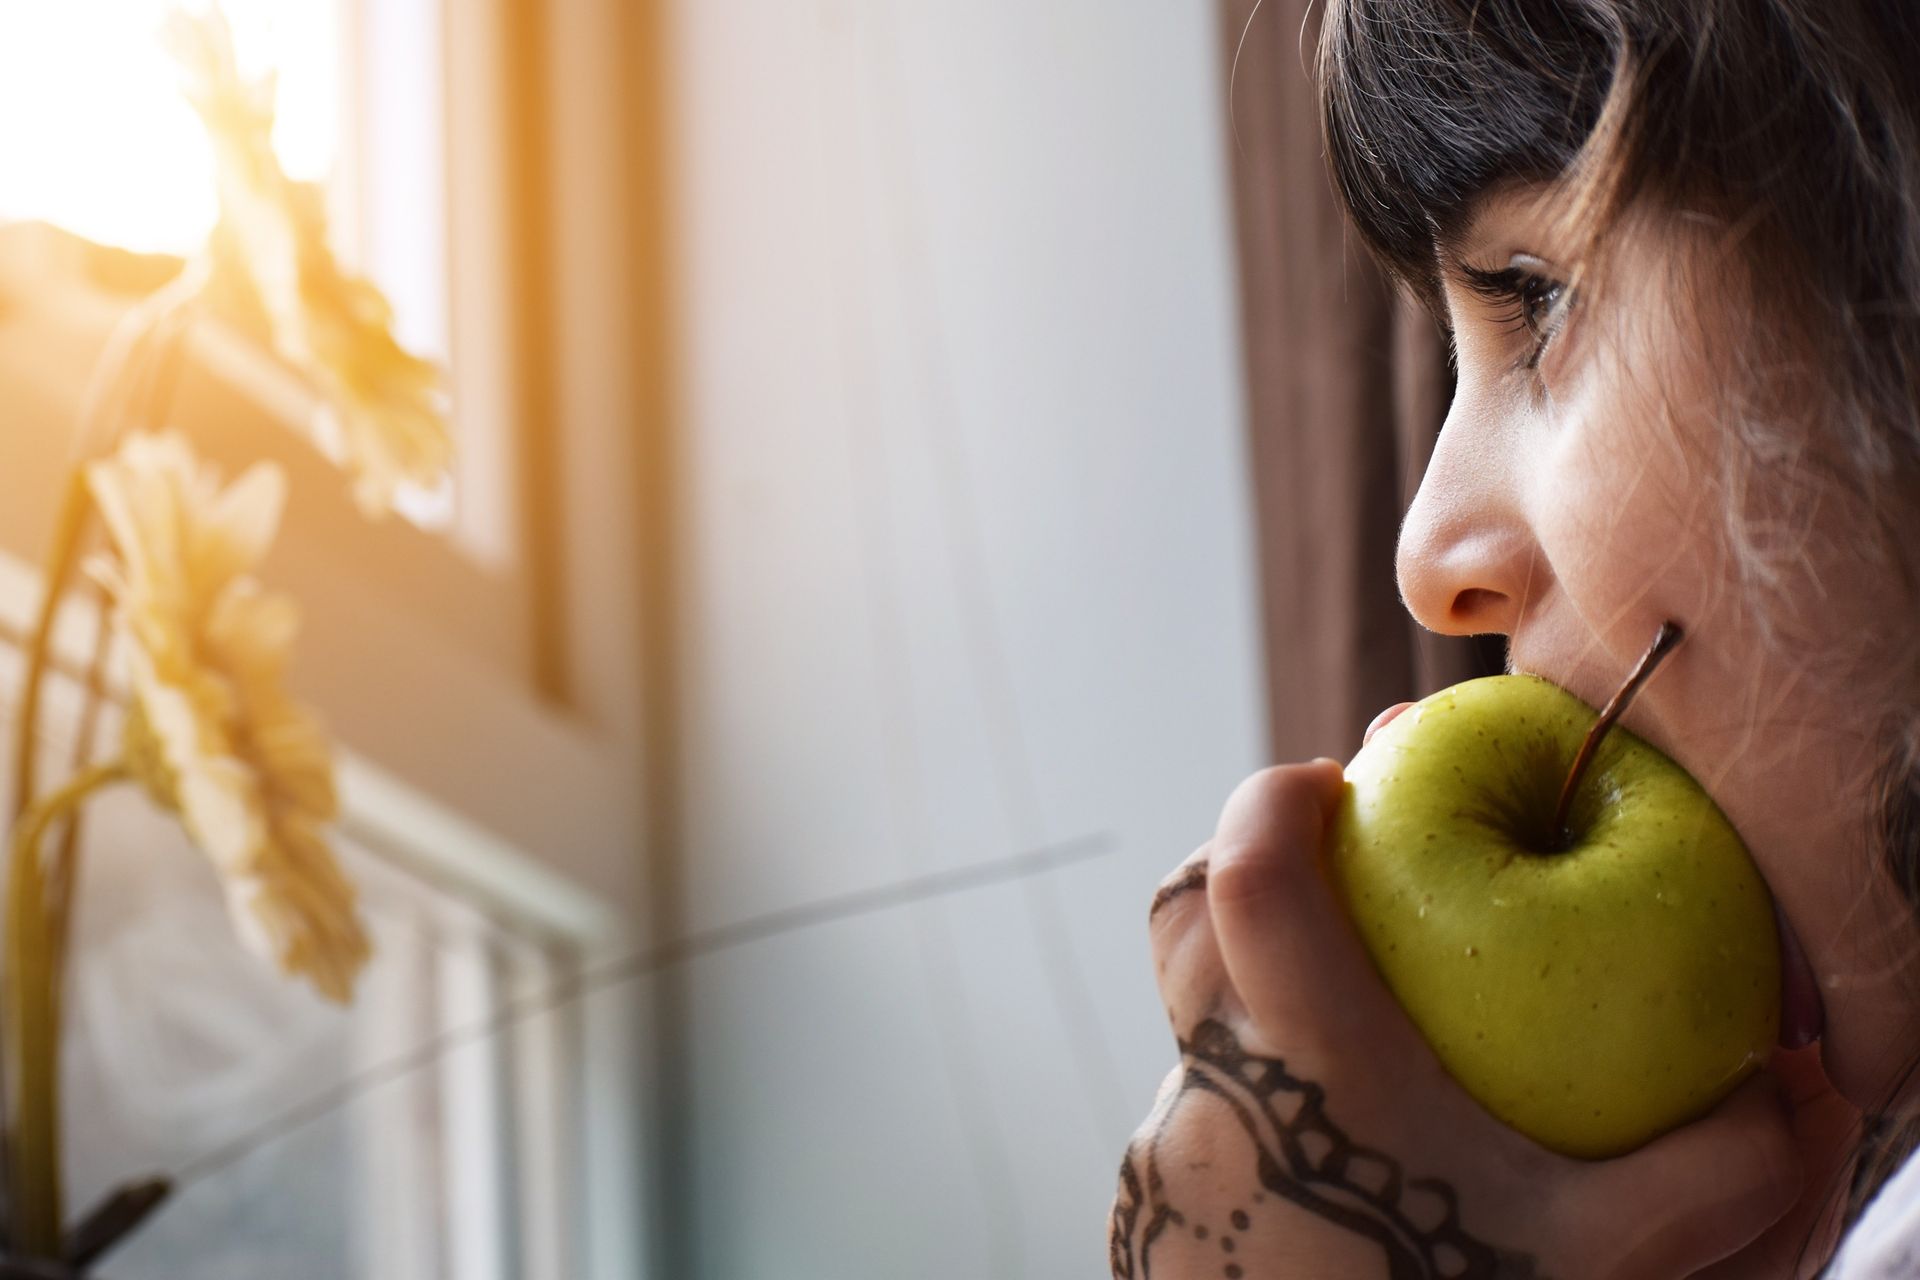 Girl biting a green apple by Khamkhor for Denture Doctor.